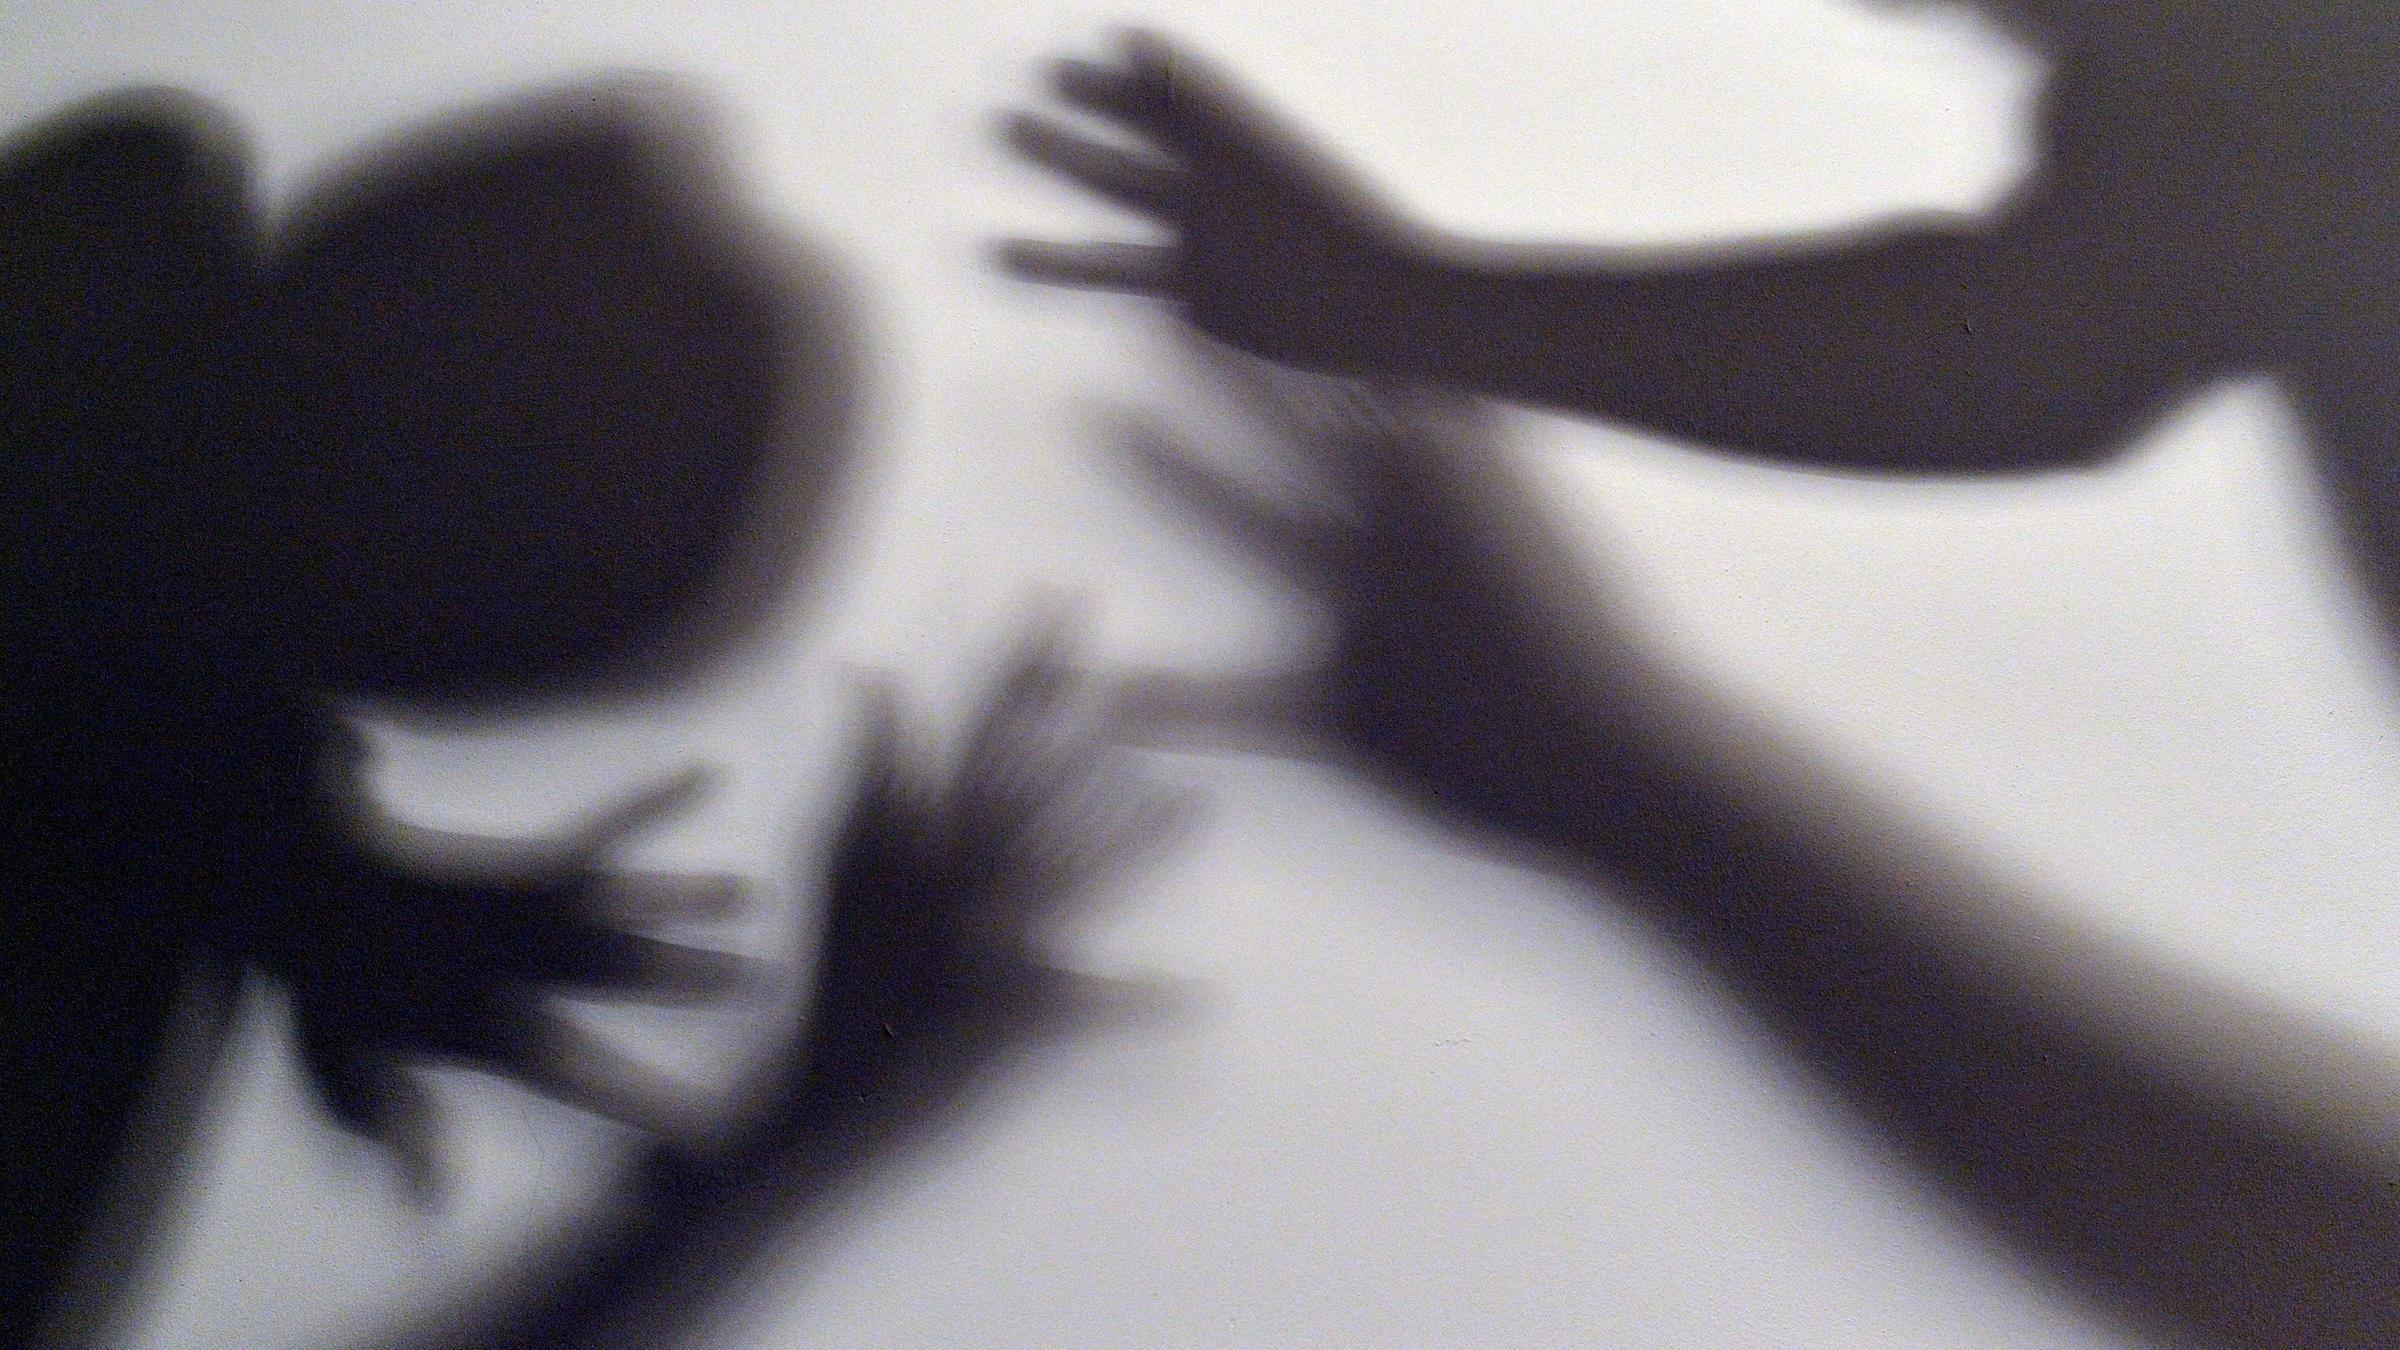 Schatten sollen symbolisieren, wie sich ein Kind gegen Gewalt eines Erwachsenen wehrt. (Symbolbild)